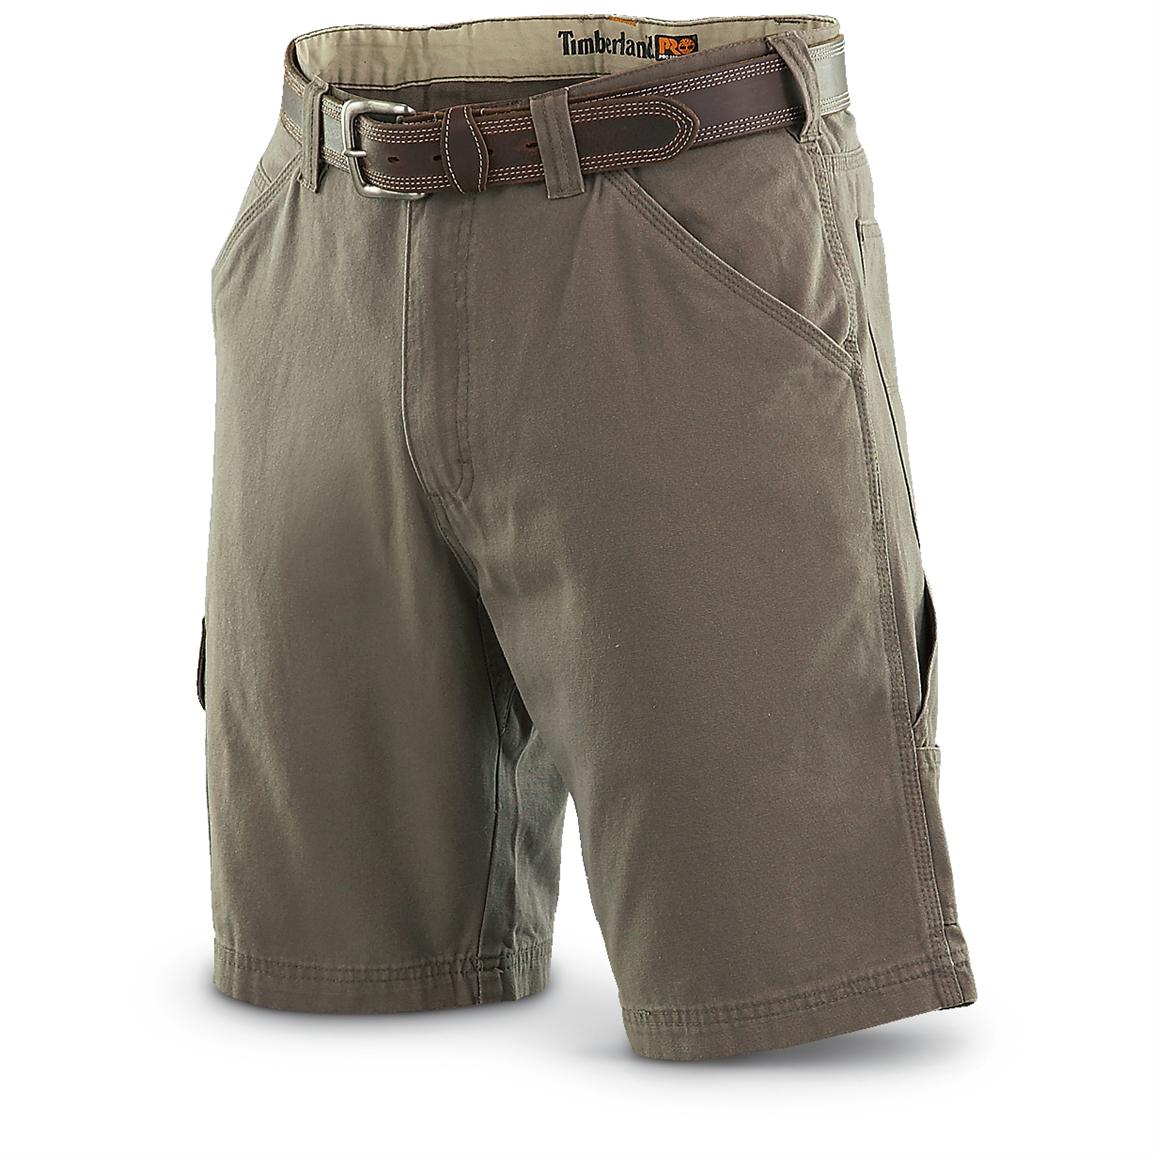 timberland pro shorts